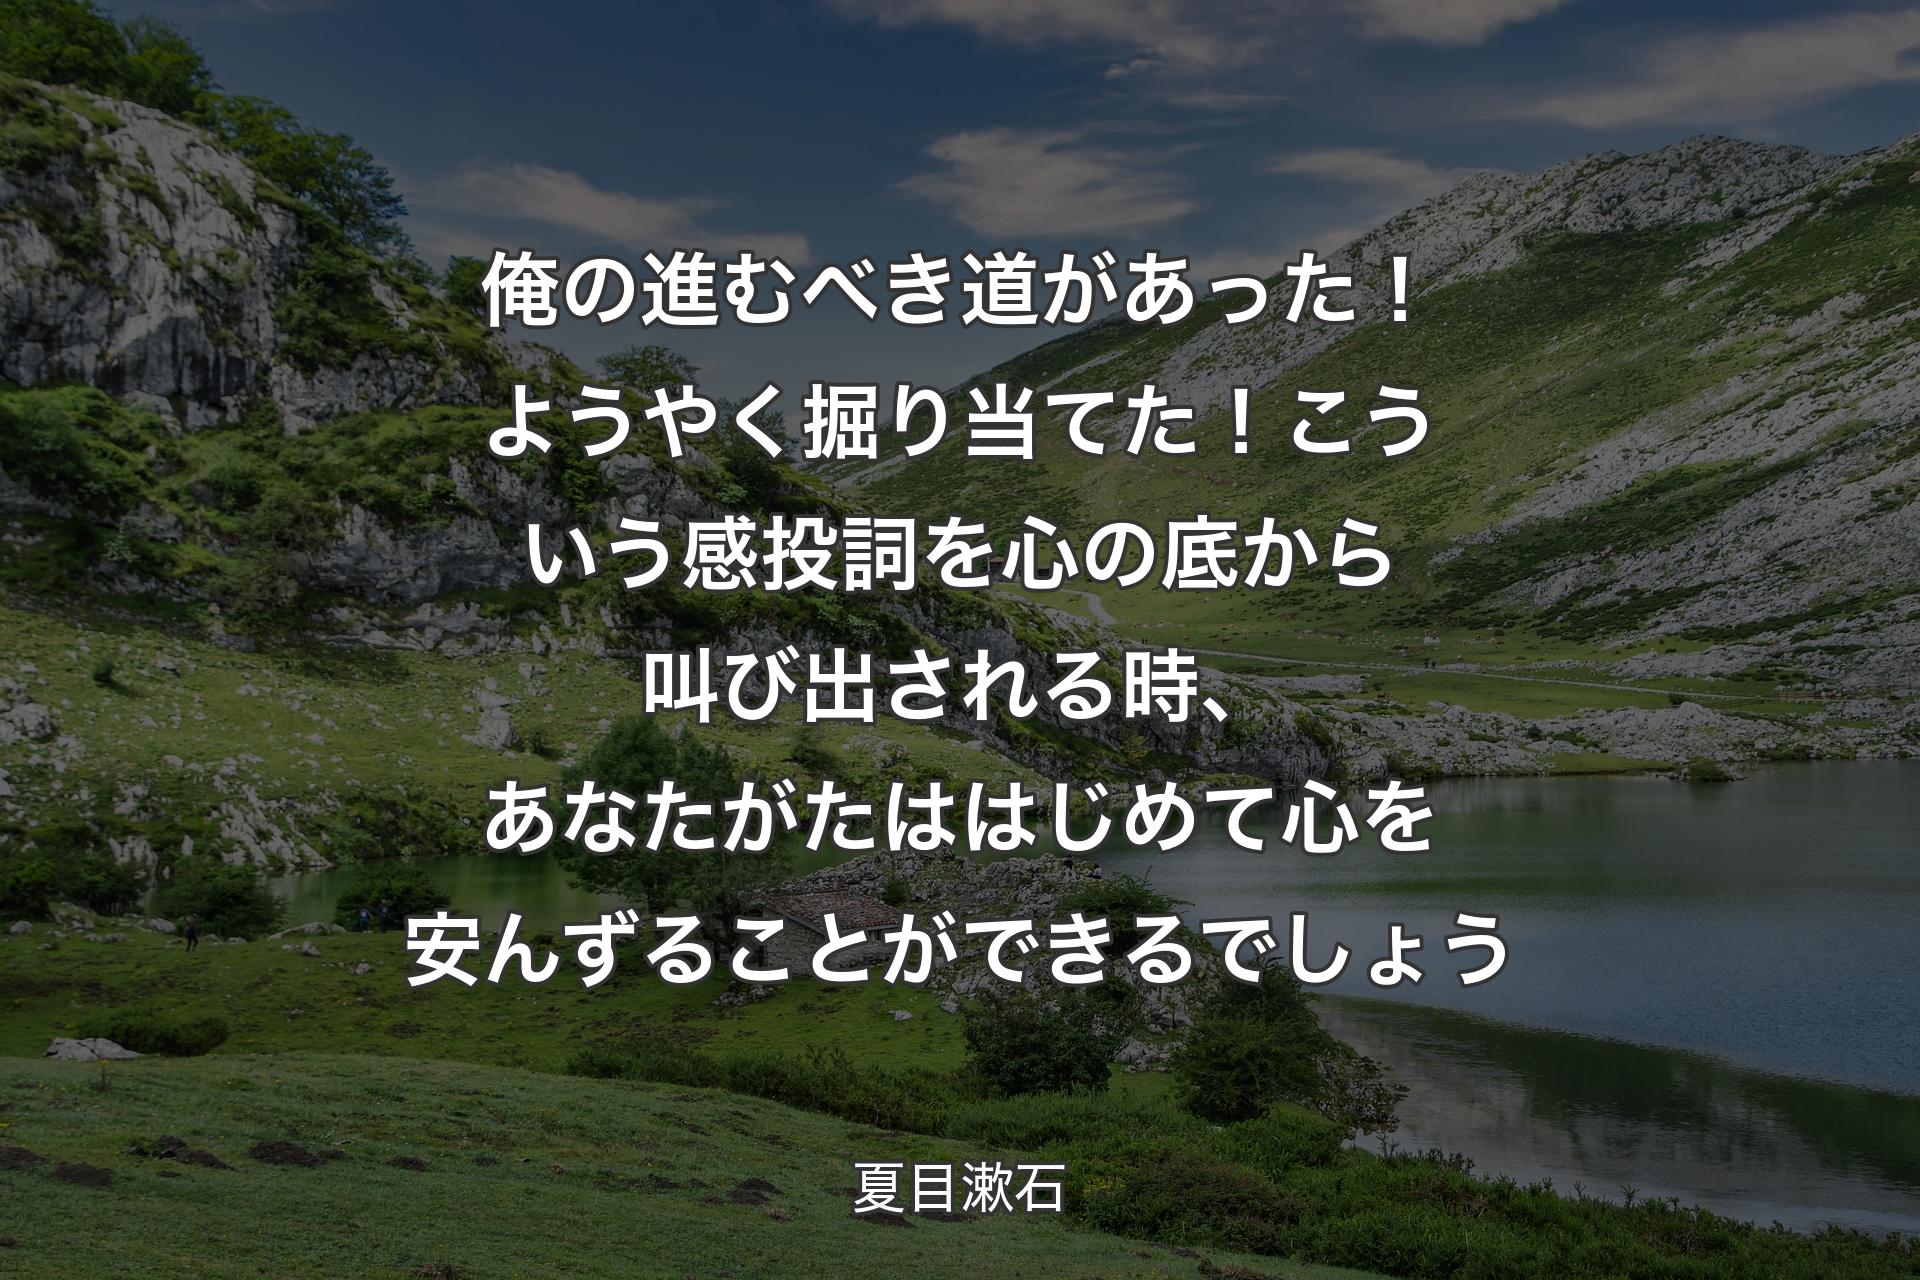 【背景1】俺の進むべき道があった！ようやく掘り当てた！こういう感投詞を心の底から叫び出される時、あなたがたははじめて心を安んずることができるでしょう - 夏目漱石